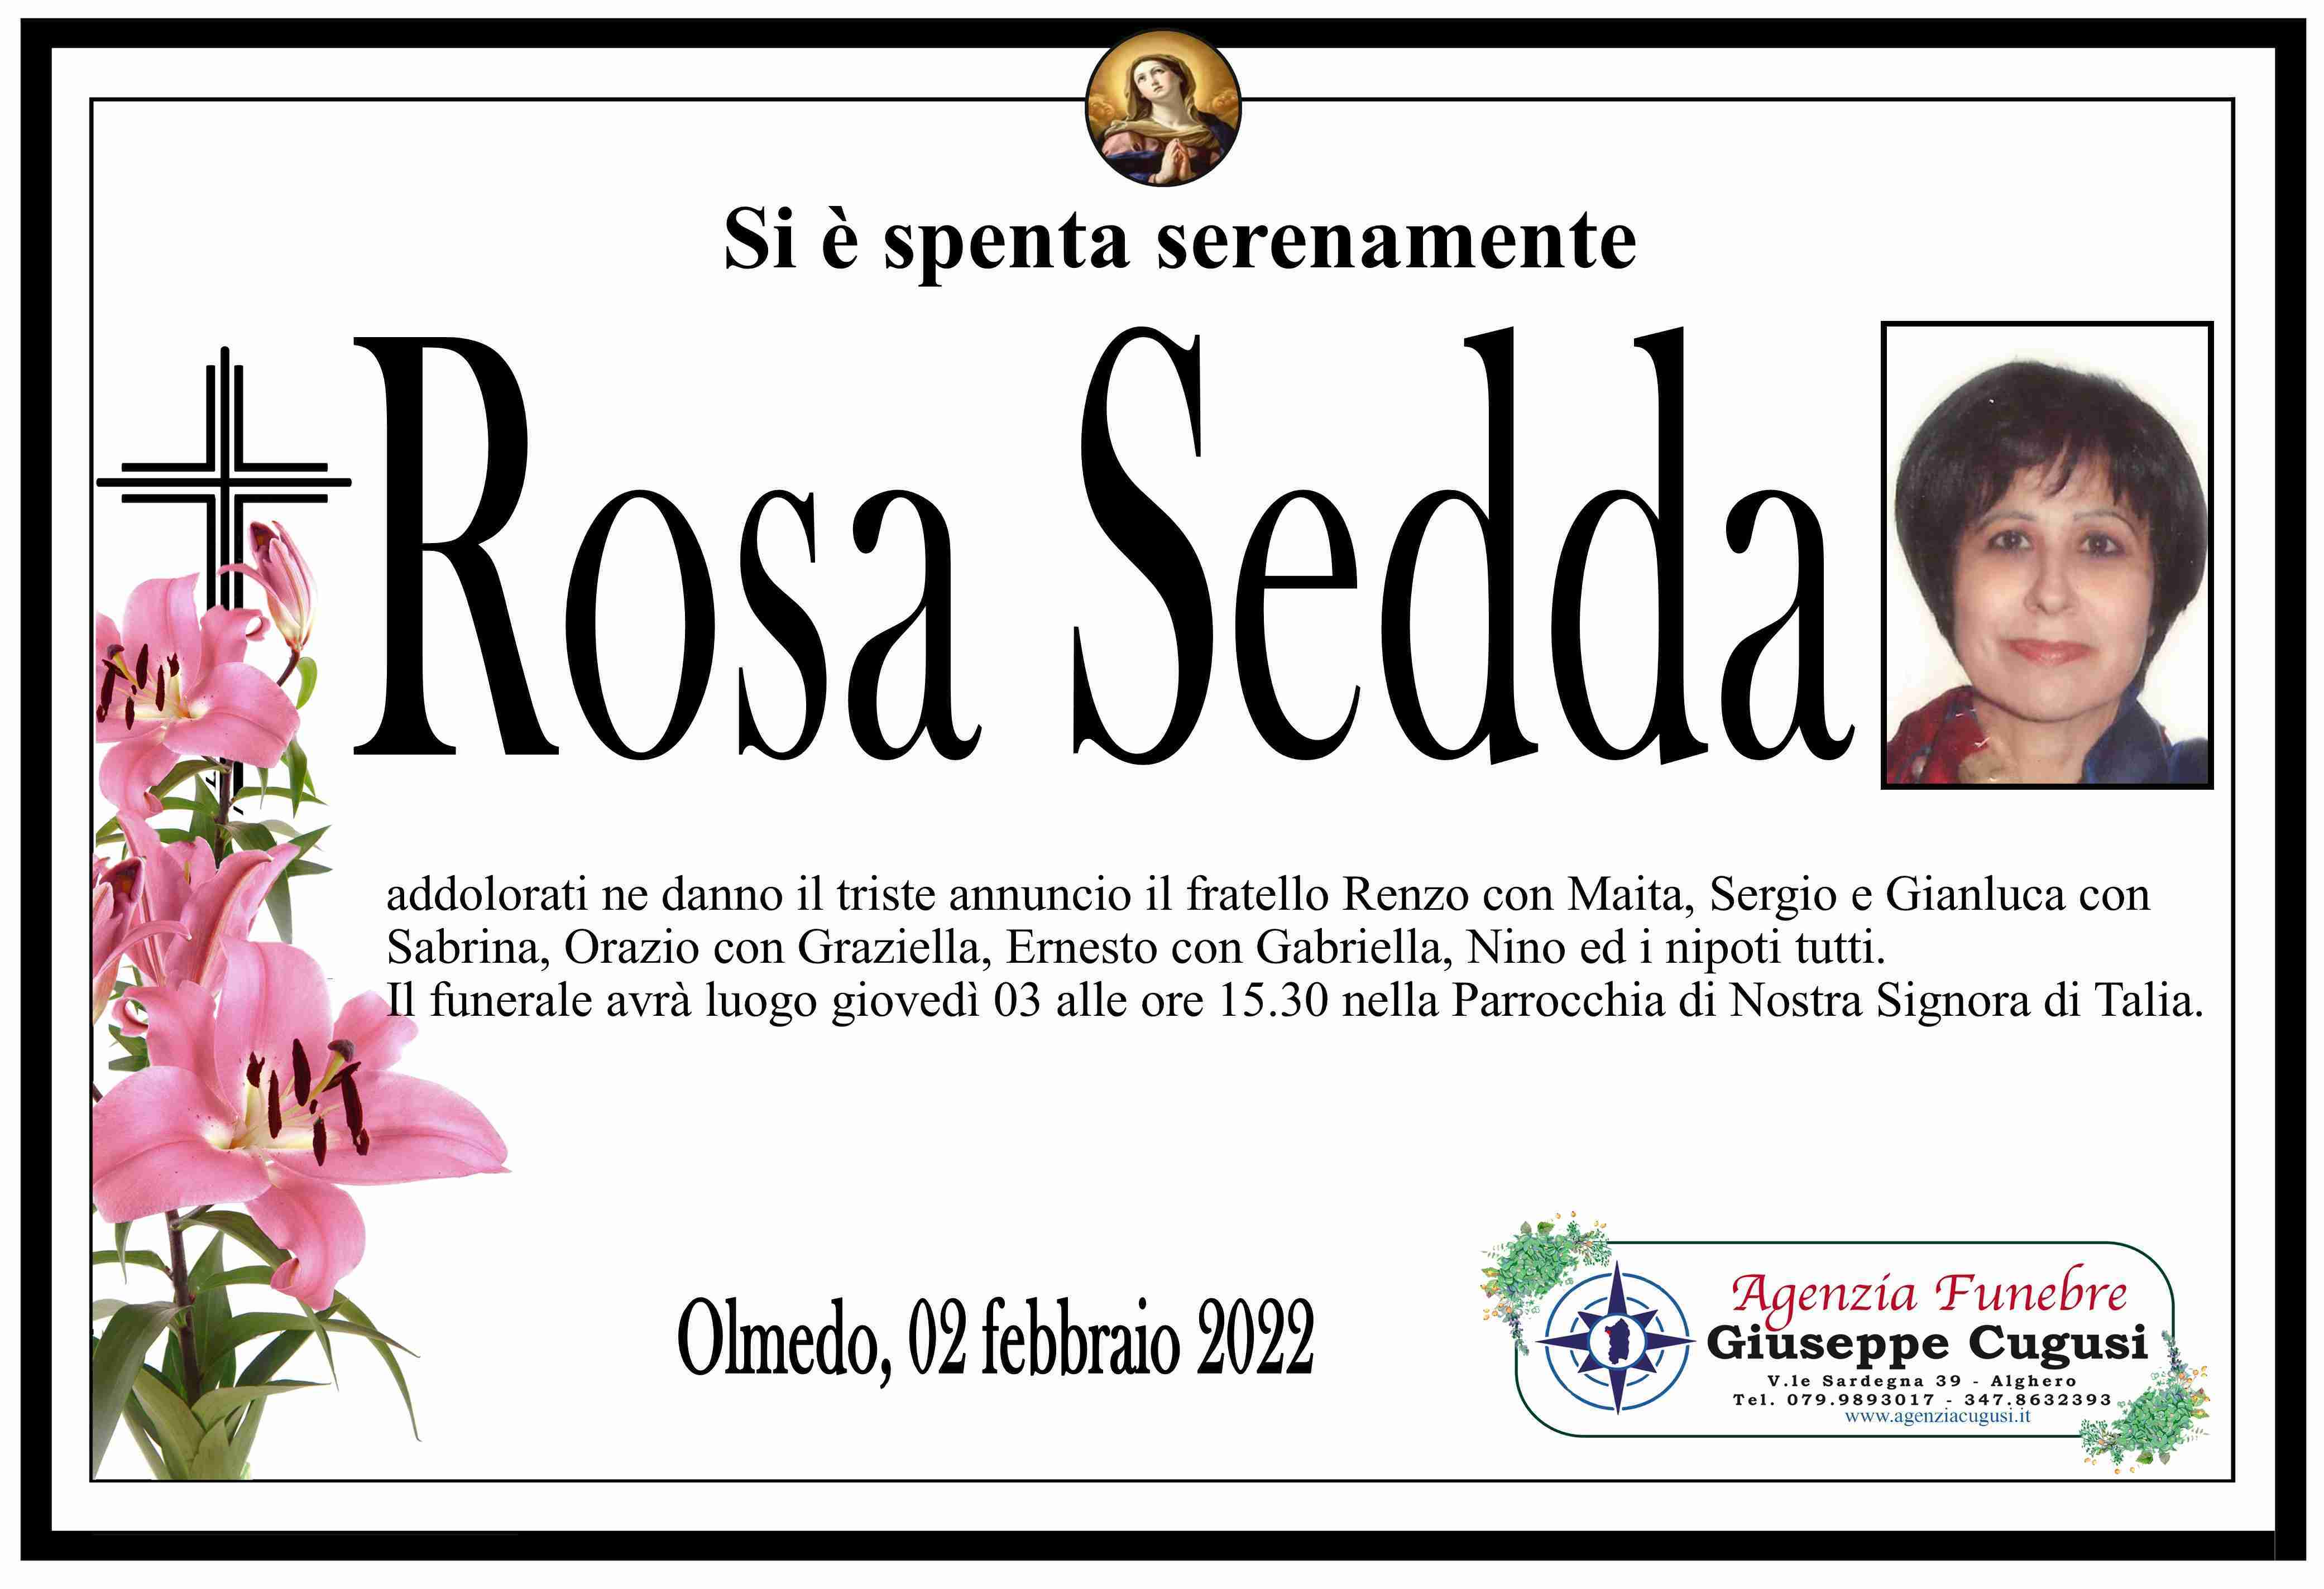 Rosa Sedda